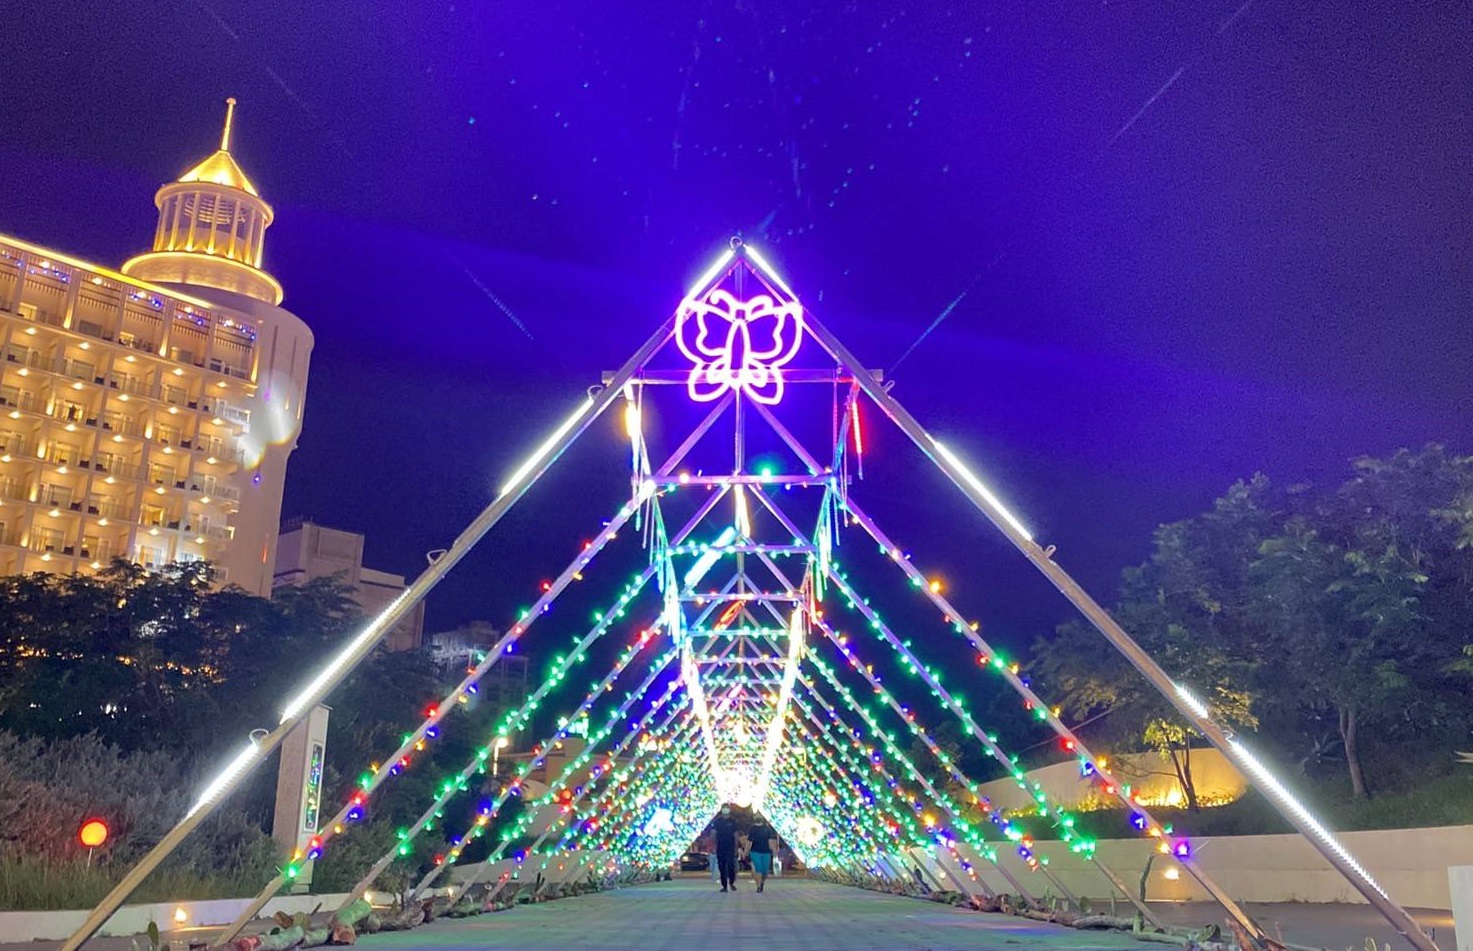 Festival Seni Cahaya Internasional Penghu menerangi Penghu melalui seni cahaya warna-warni.  (Sumber foto : Pemerintah Kabupaten Penghu)